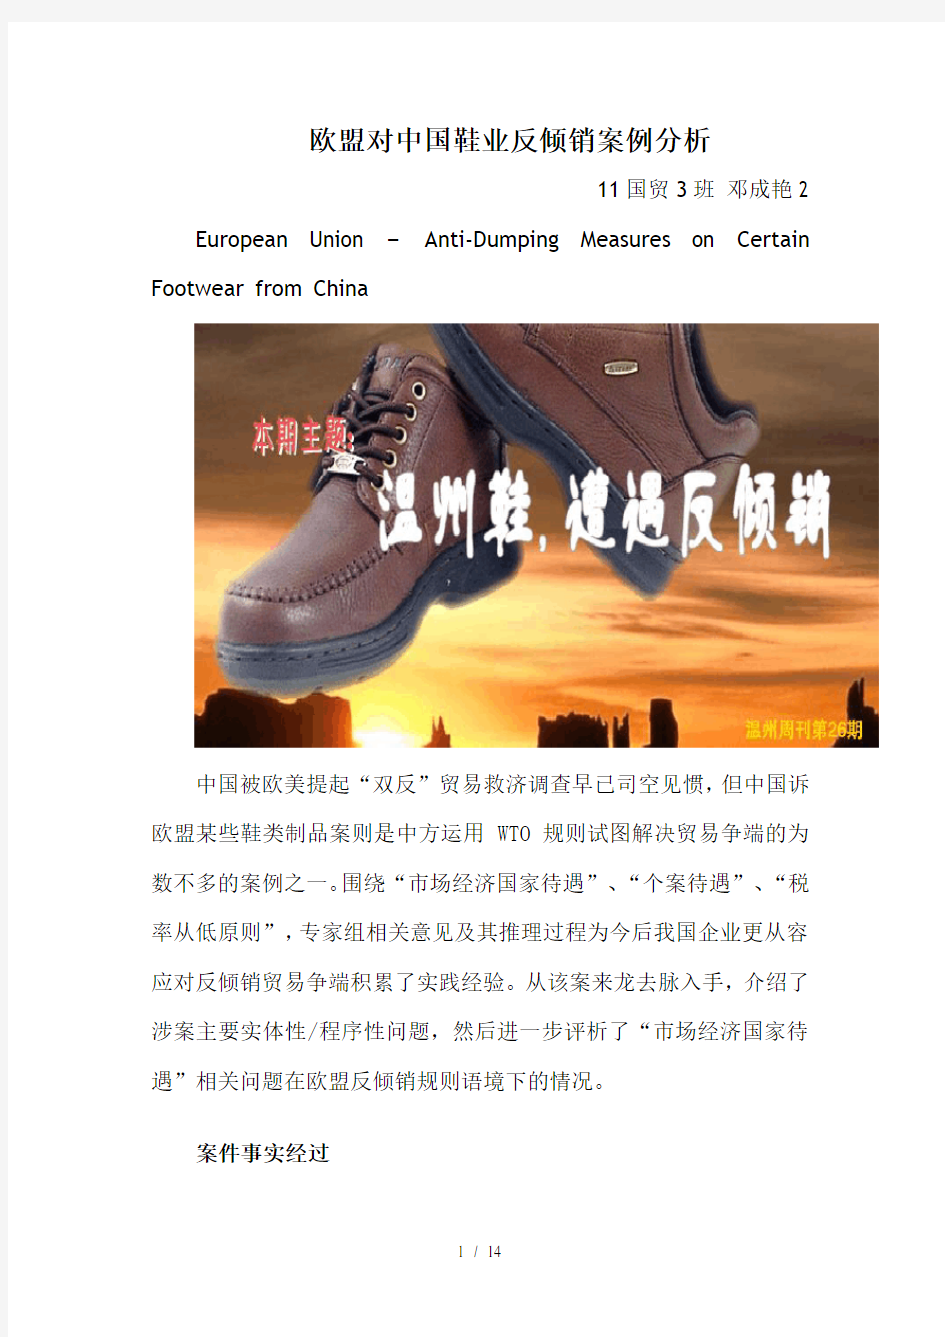 wto案例分析—欧盟对中国鞋业反倾销案-邓成艳